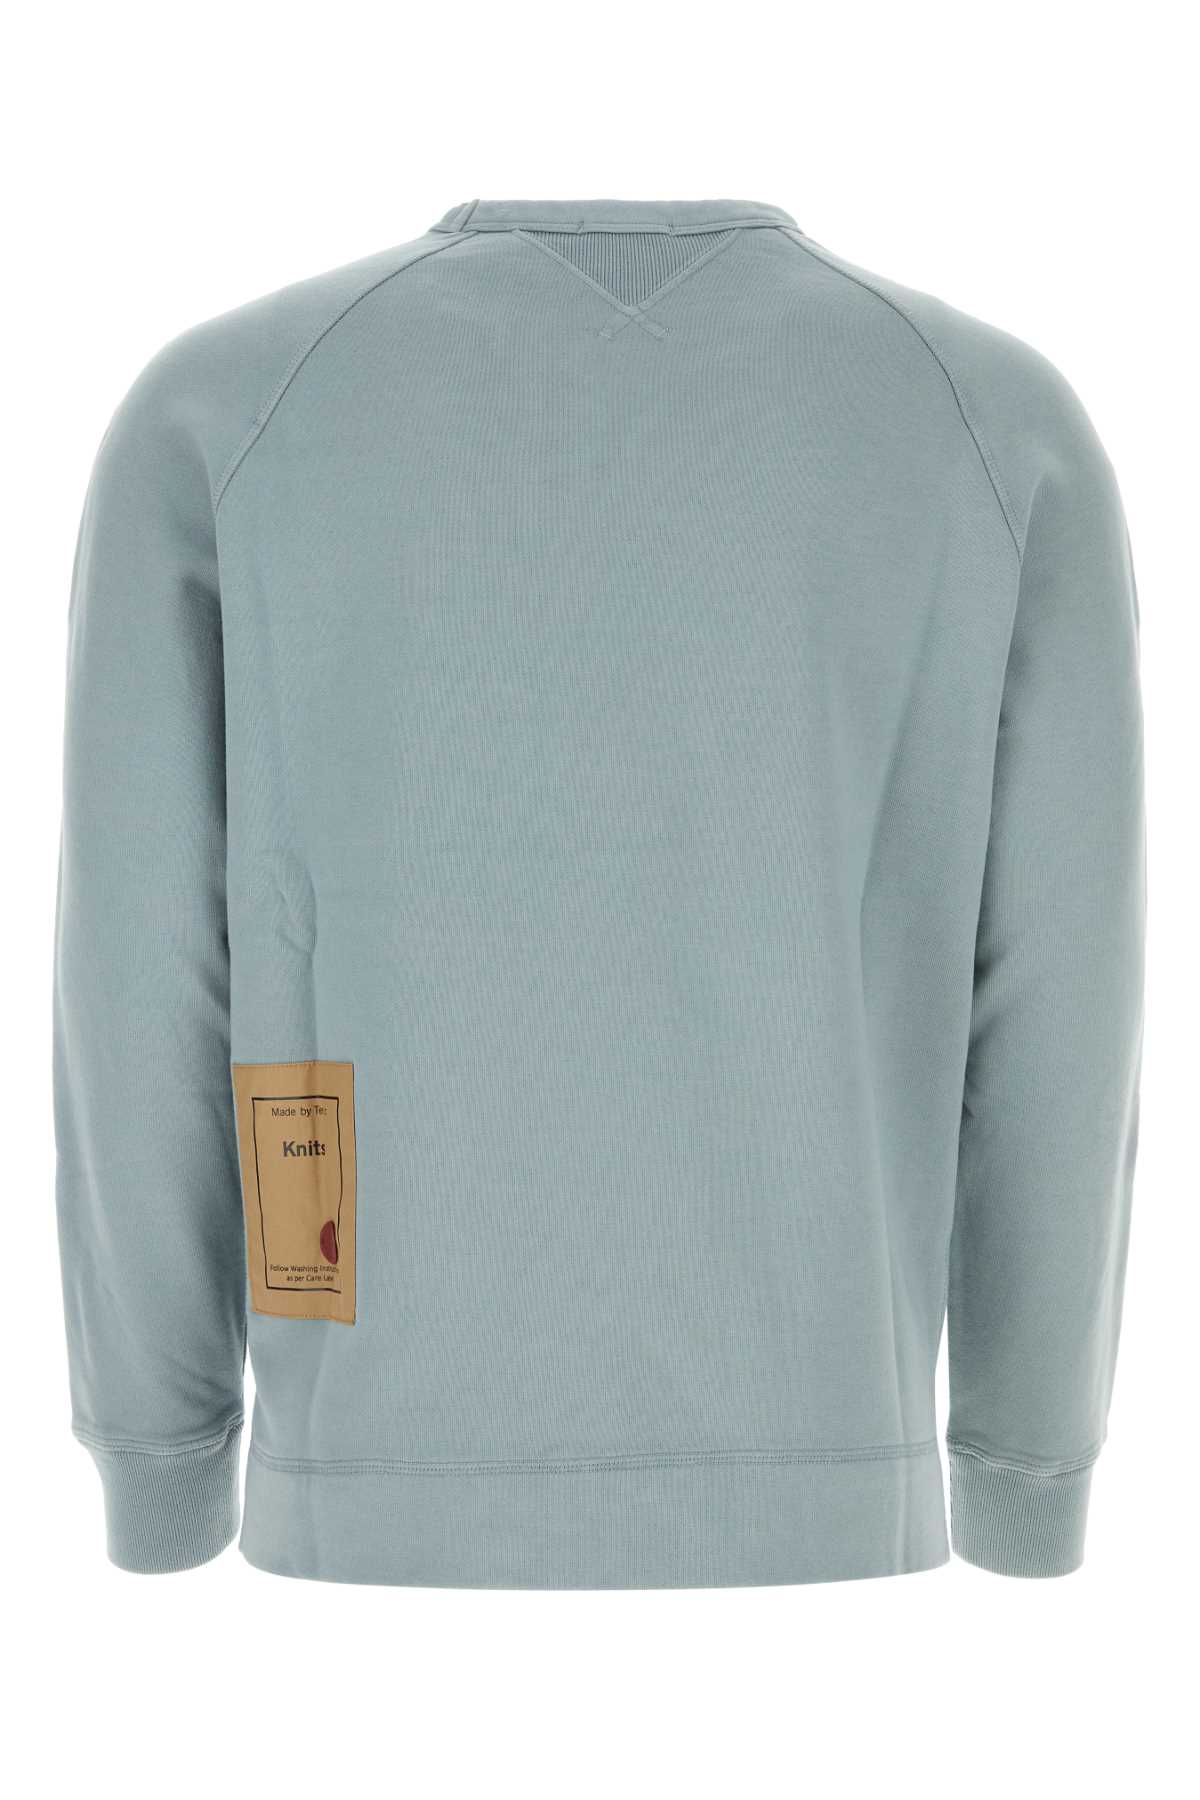 Ten C Powder Blue Cotton Sweatshirt In Grey